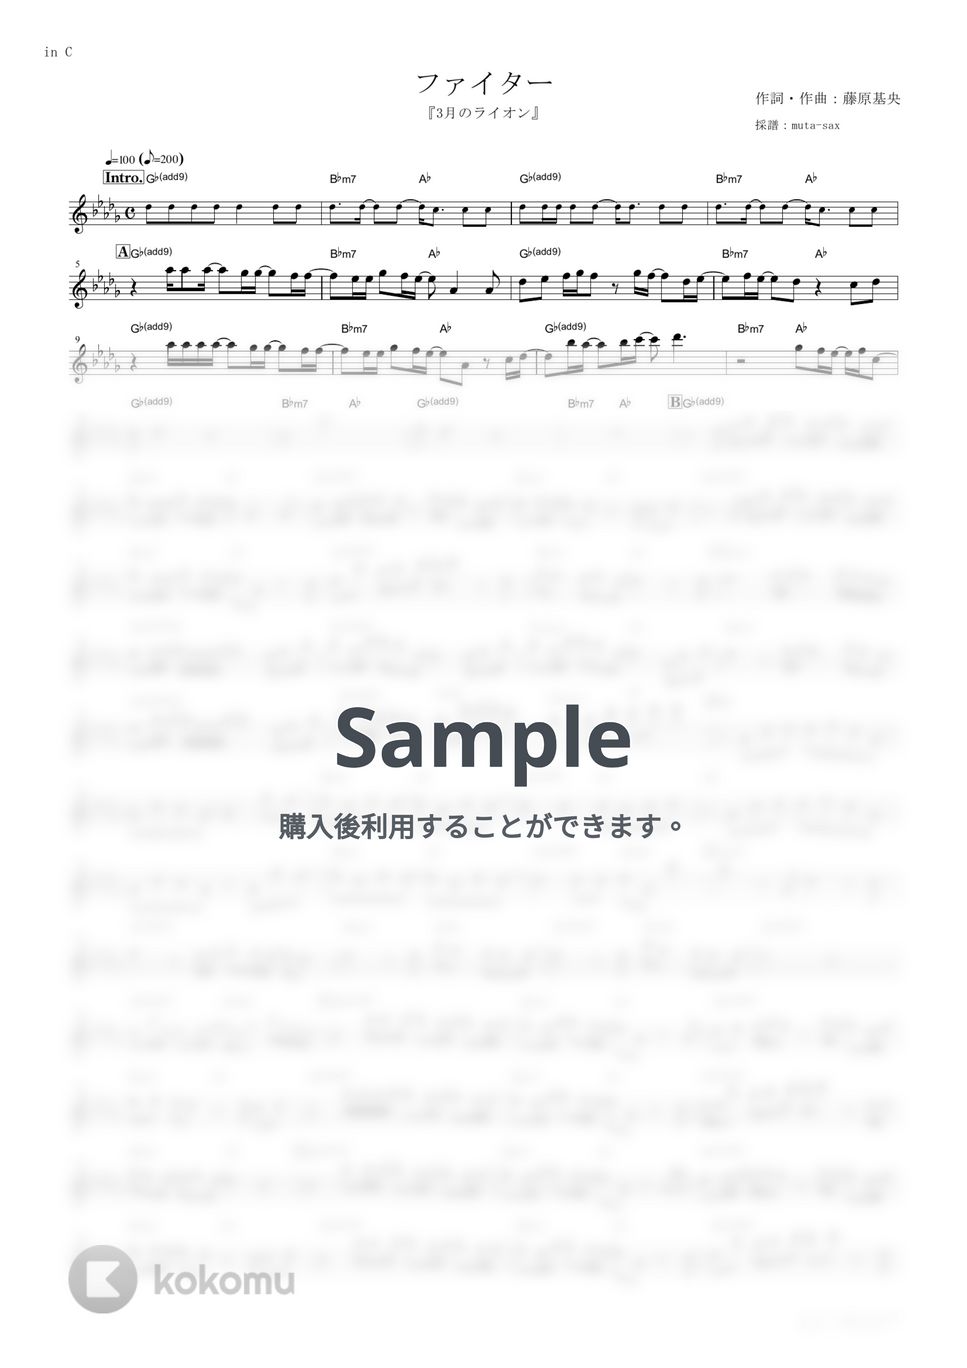 BUMP OF CHICKEN - ファイター (『3月のライオン』 / in C) by muta-sax